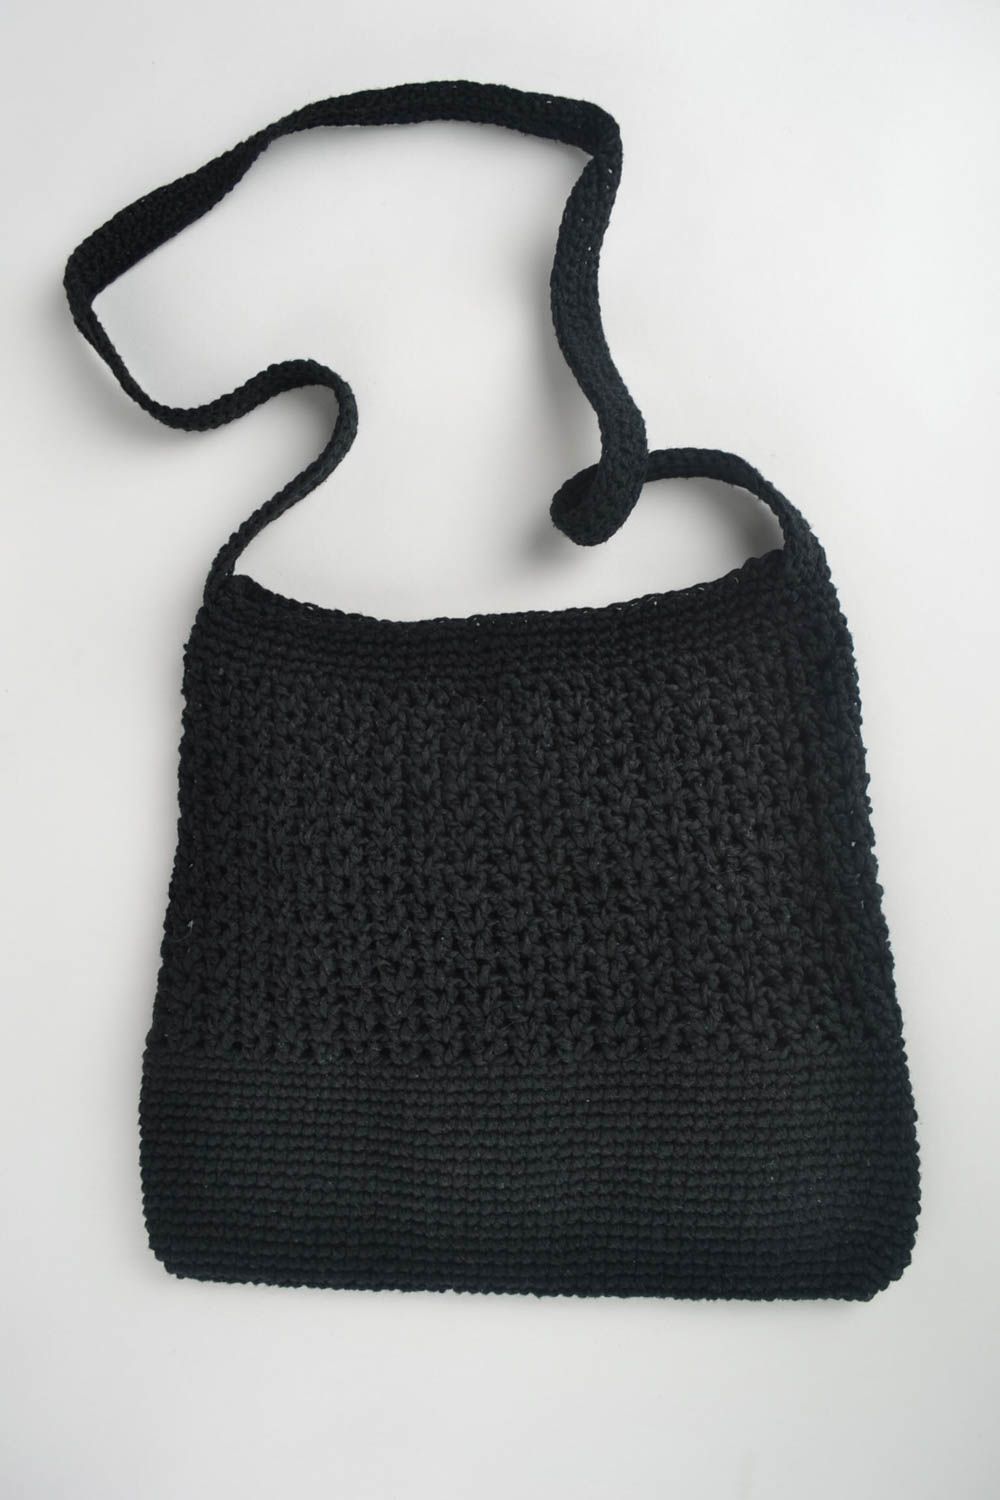 Черная сумка ручной работы женская сумка вязаная красивая сумка на плечо фото 3